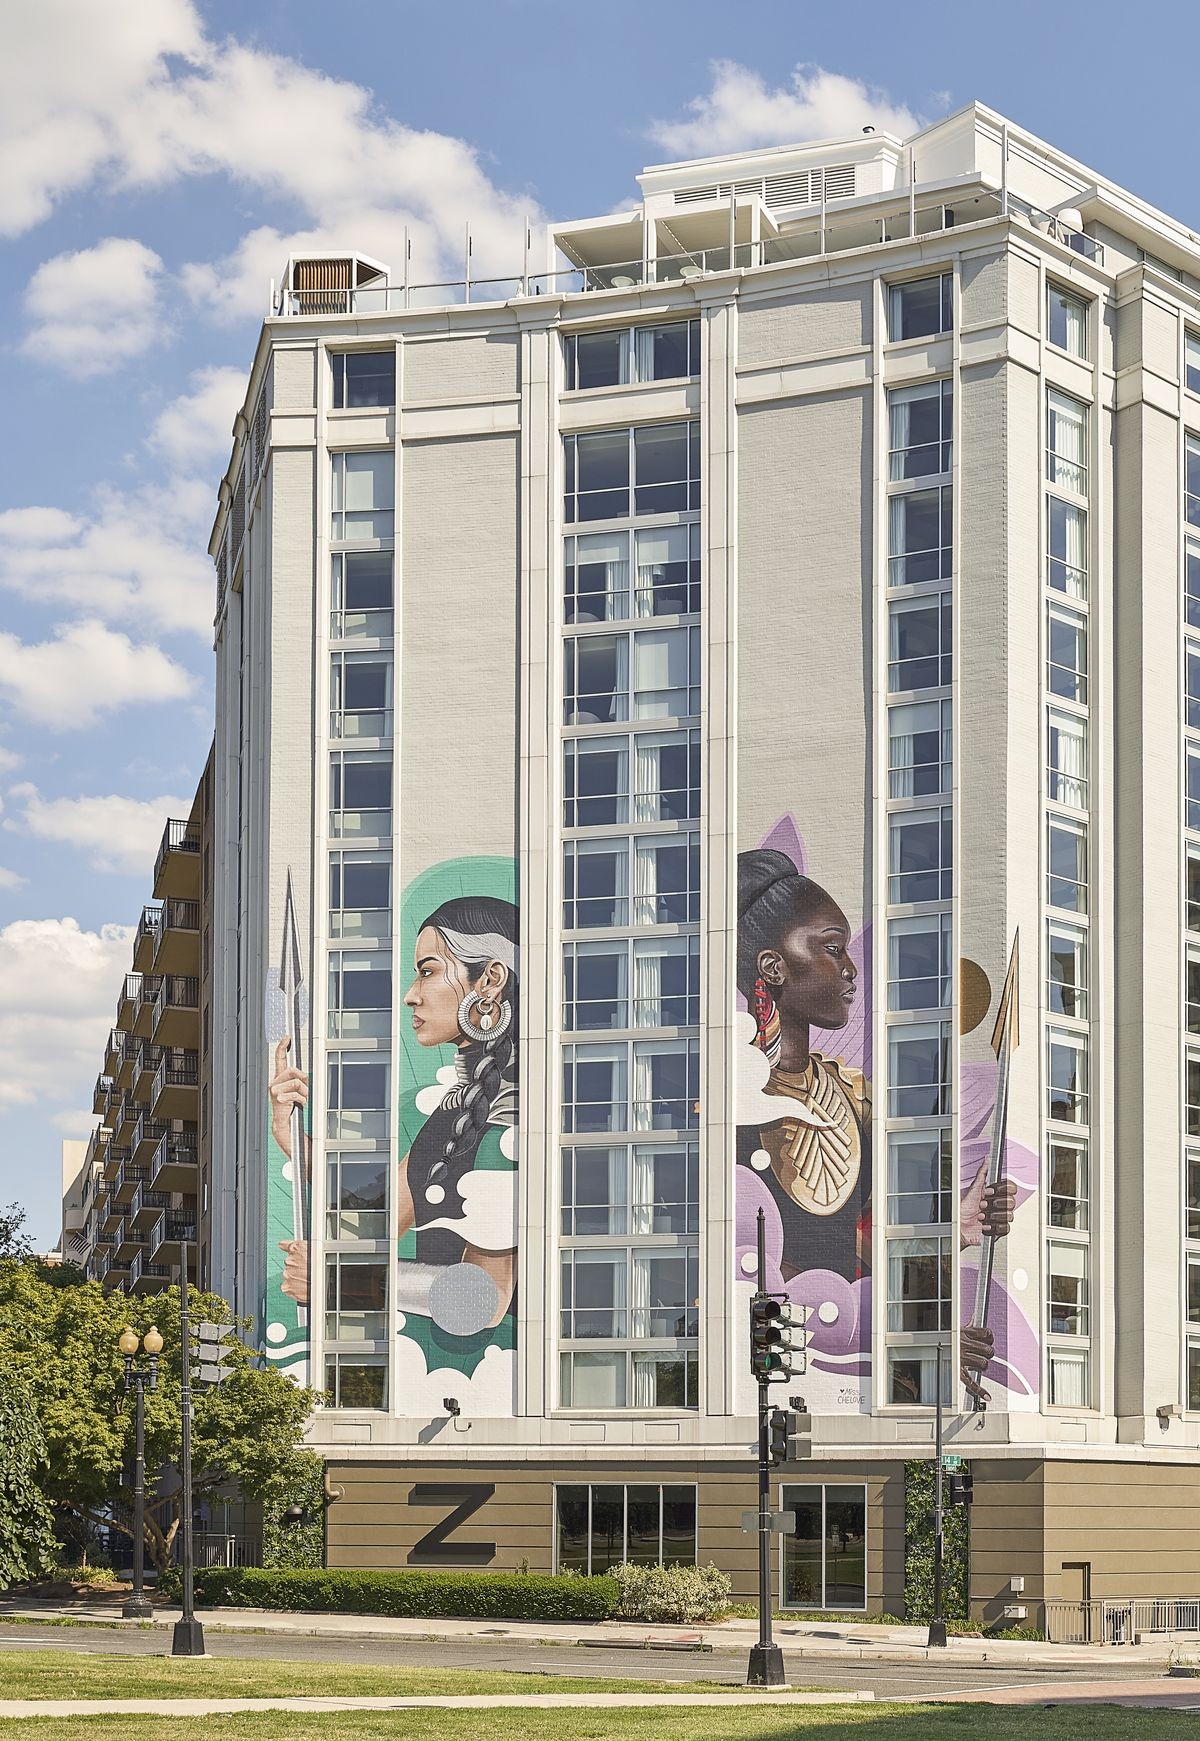 Hotel em Washington celebra conquistas femininas e igualdade de gênero por meio da arte (Foto: Divulgação)